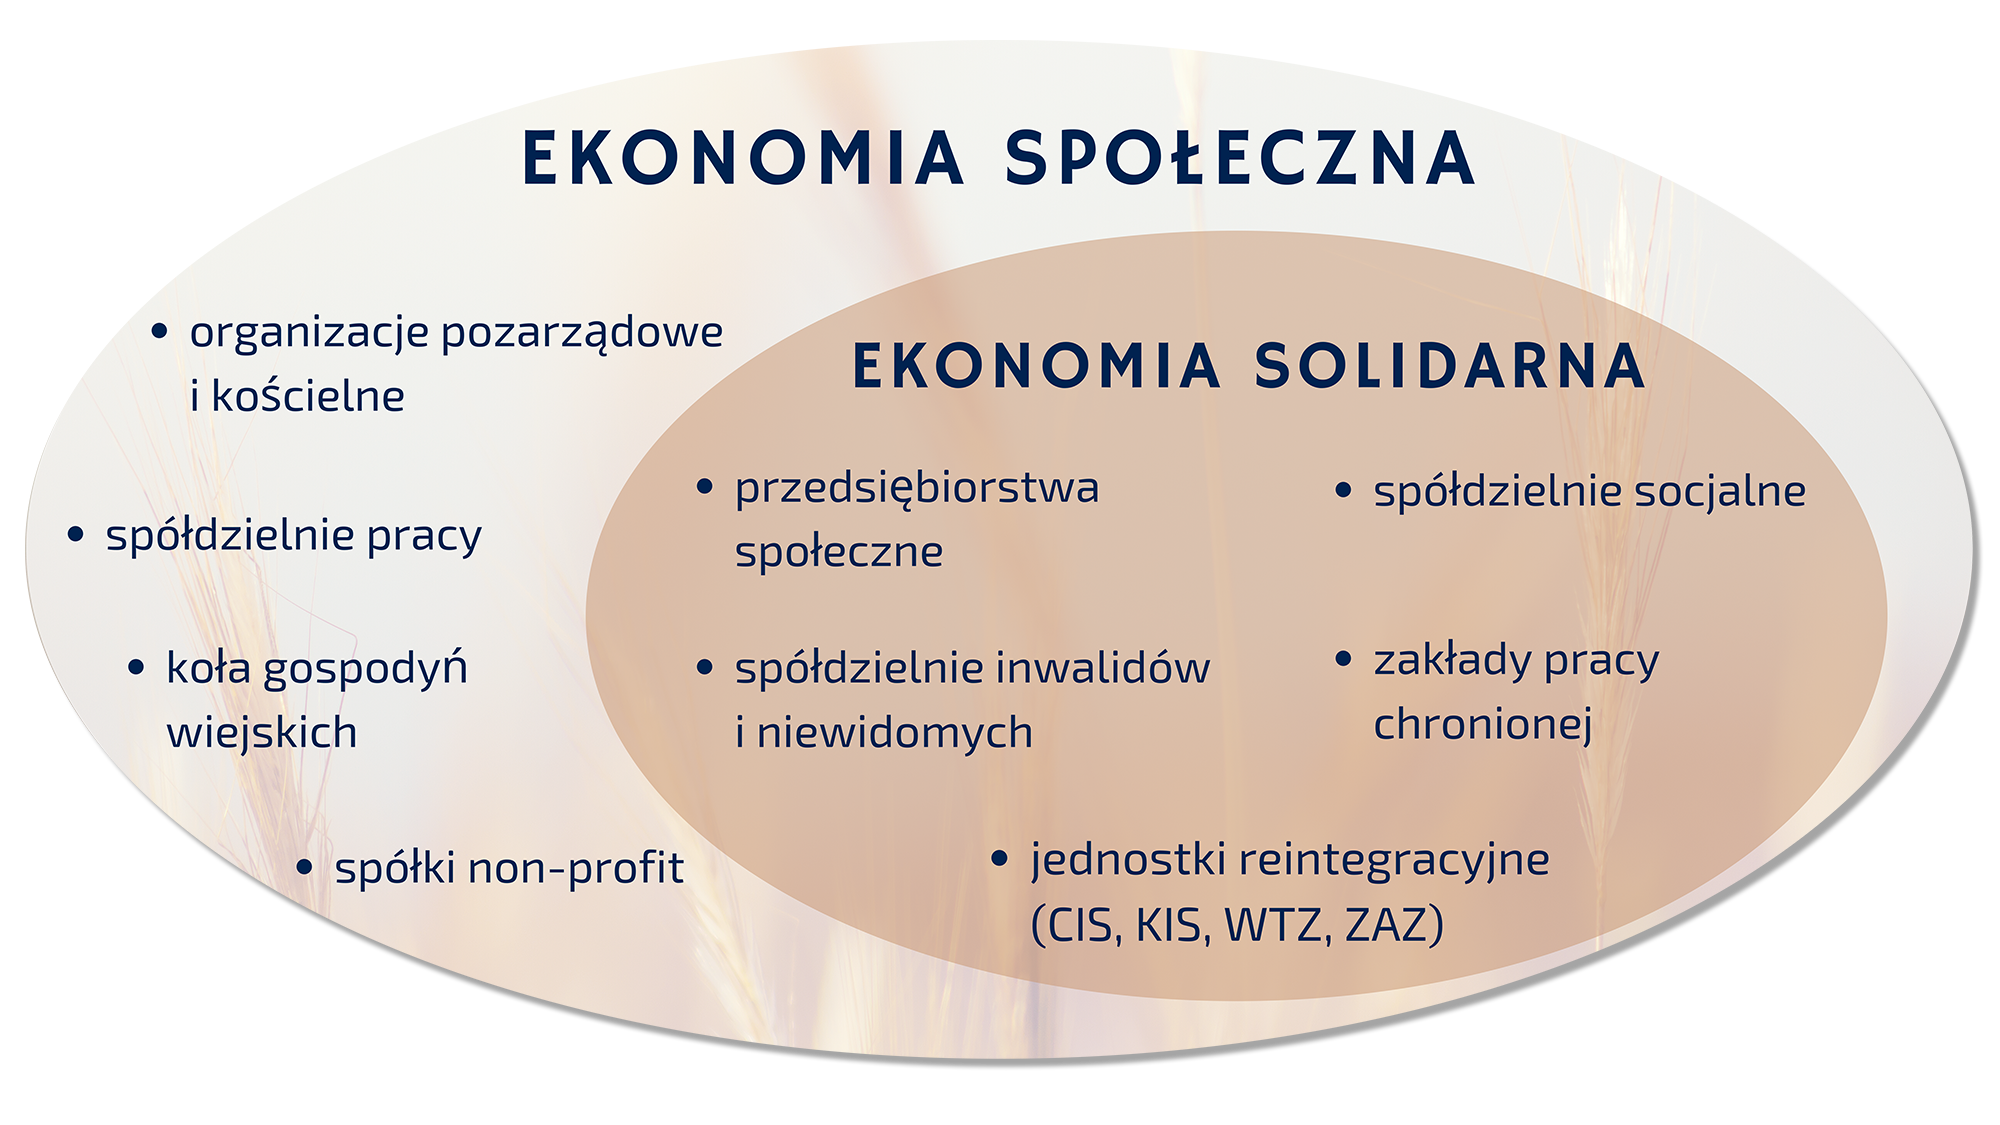 Schemat przedstawiający podział ekonomii społecznej i solidarnej z przypisanymi im formami prawnymi.